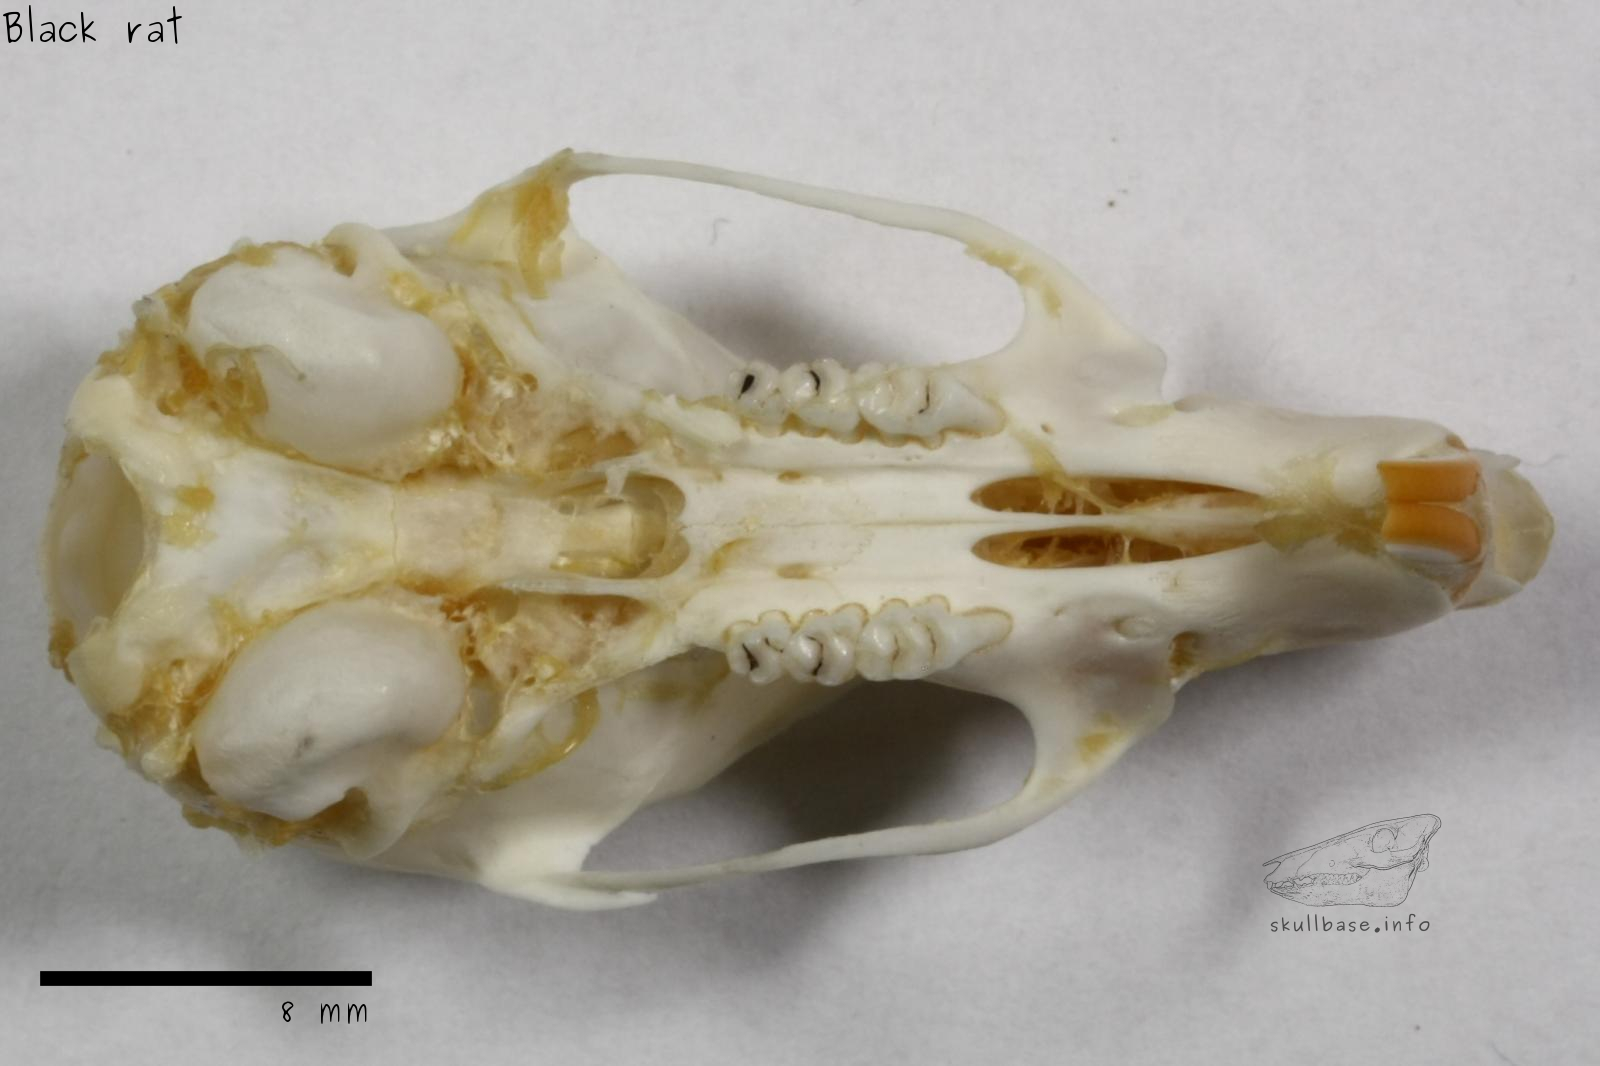 Black rat (Rattus rattus) skull ventral view